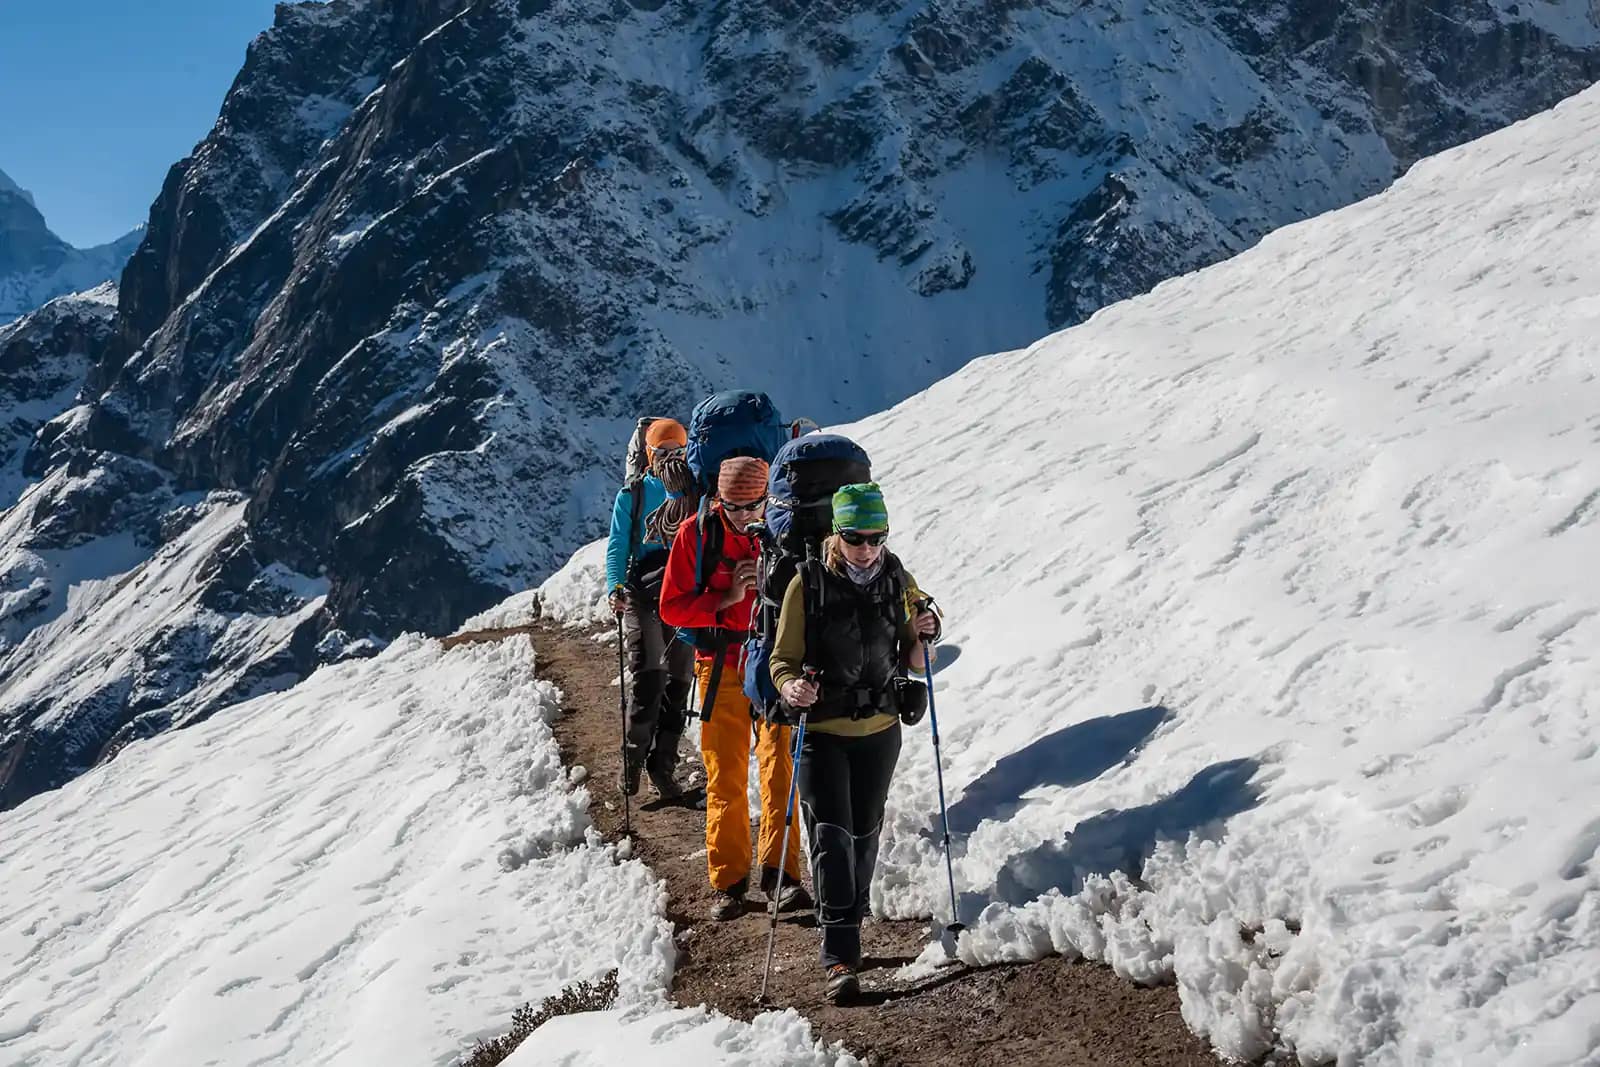 Trekkers doing Everest Base Camp in February